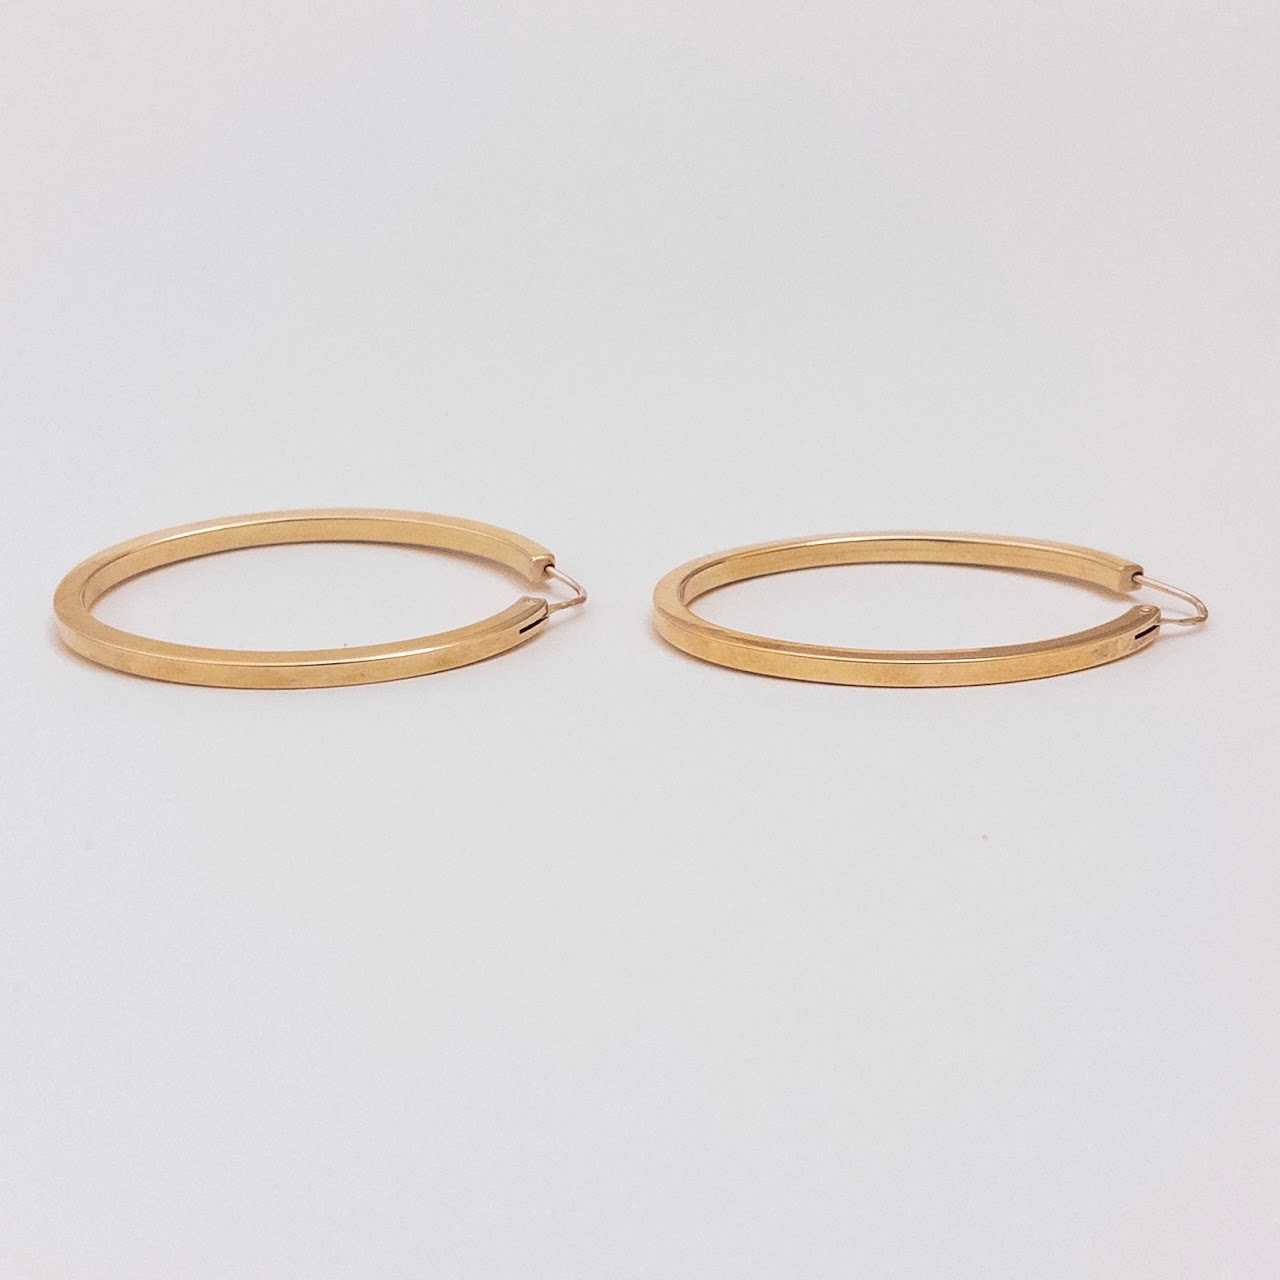 18K Gold Oval Hoop Earrings